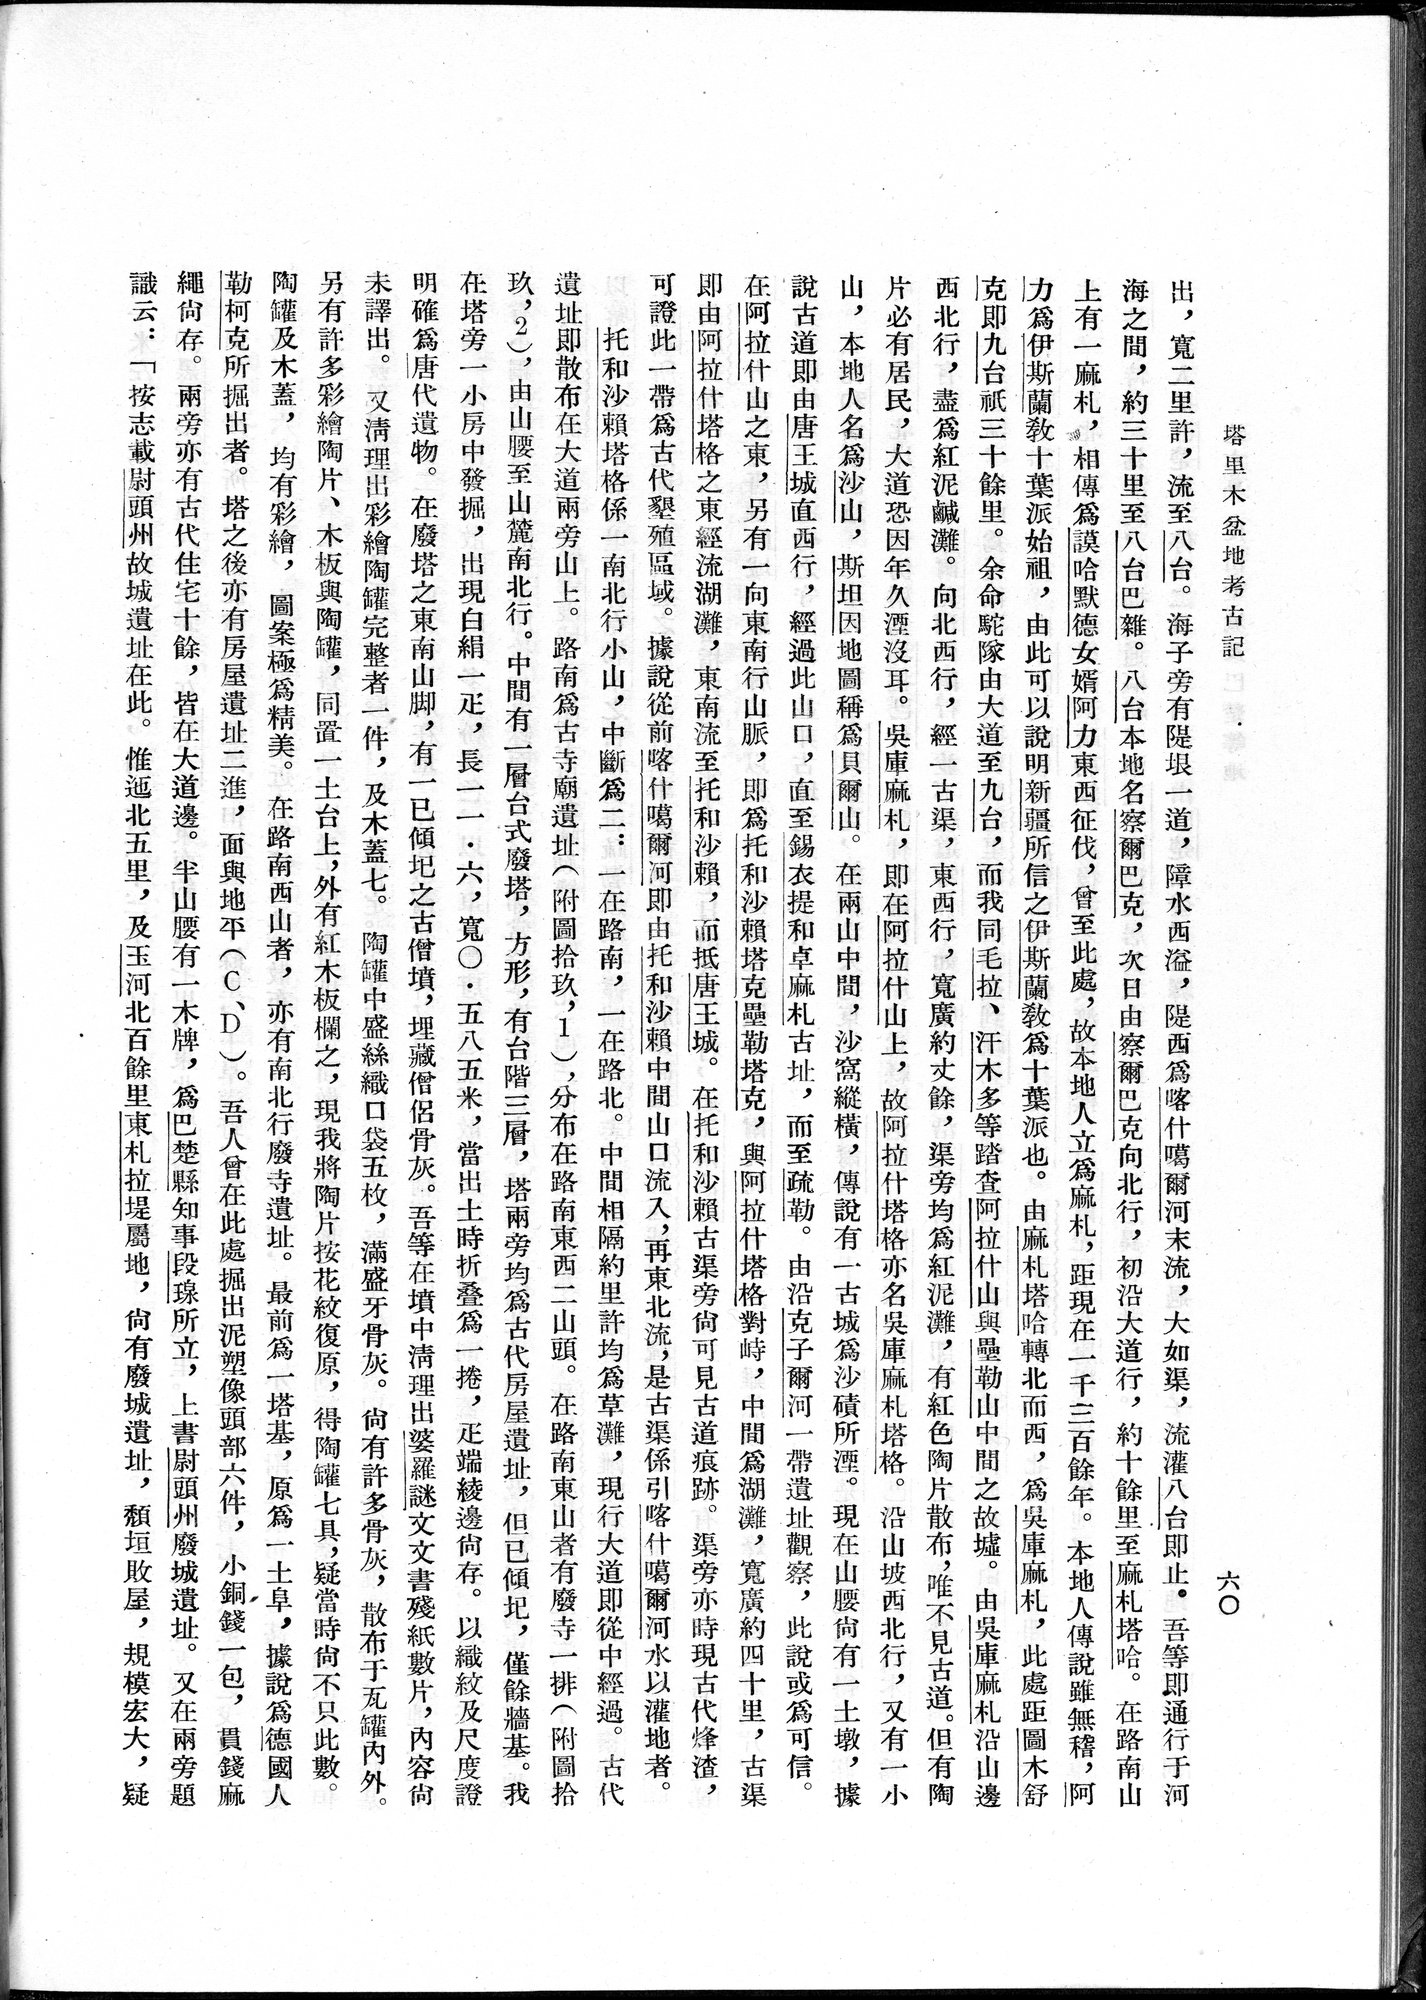 塔里木盆地考古記 : vol.1 / Page 84 (Grayscale High Resolution Image)